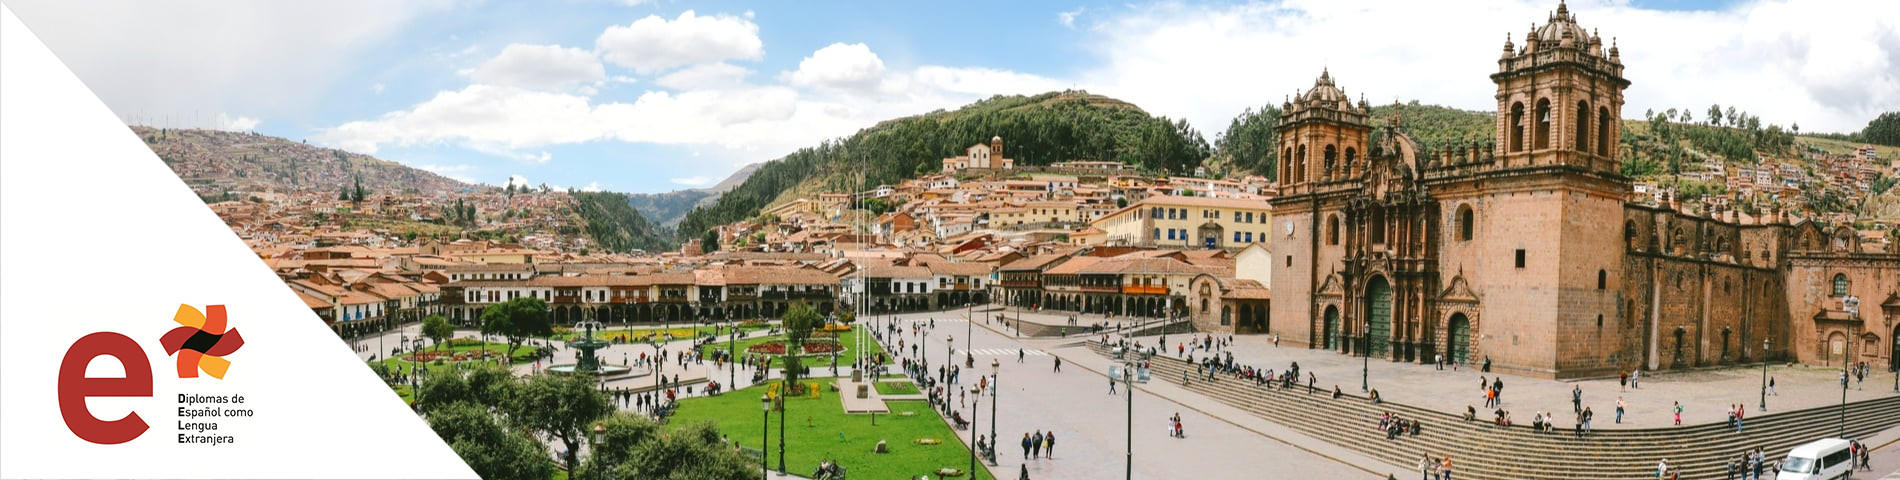 Cuzco - DELE